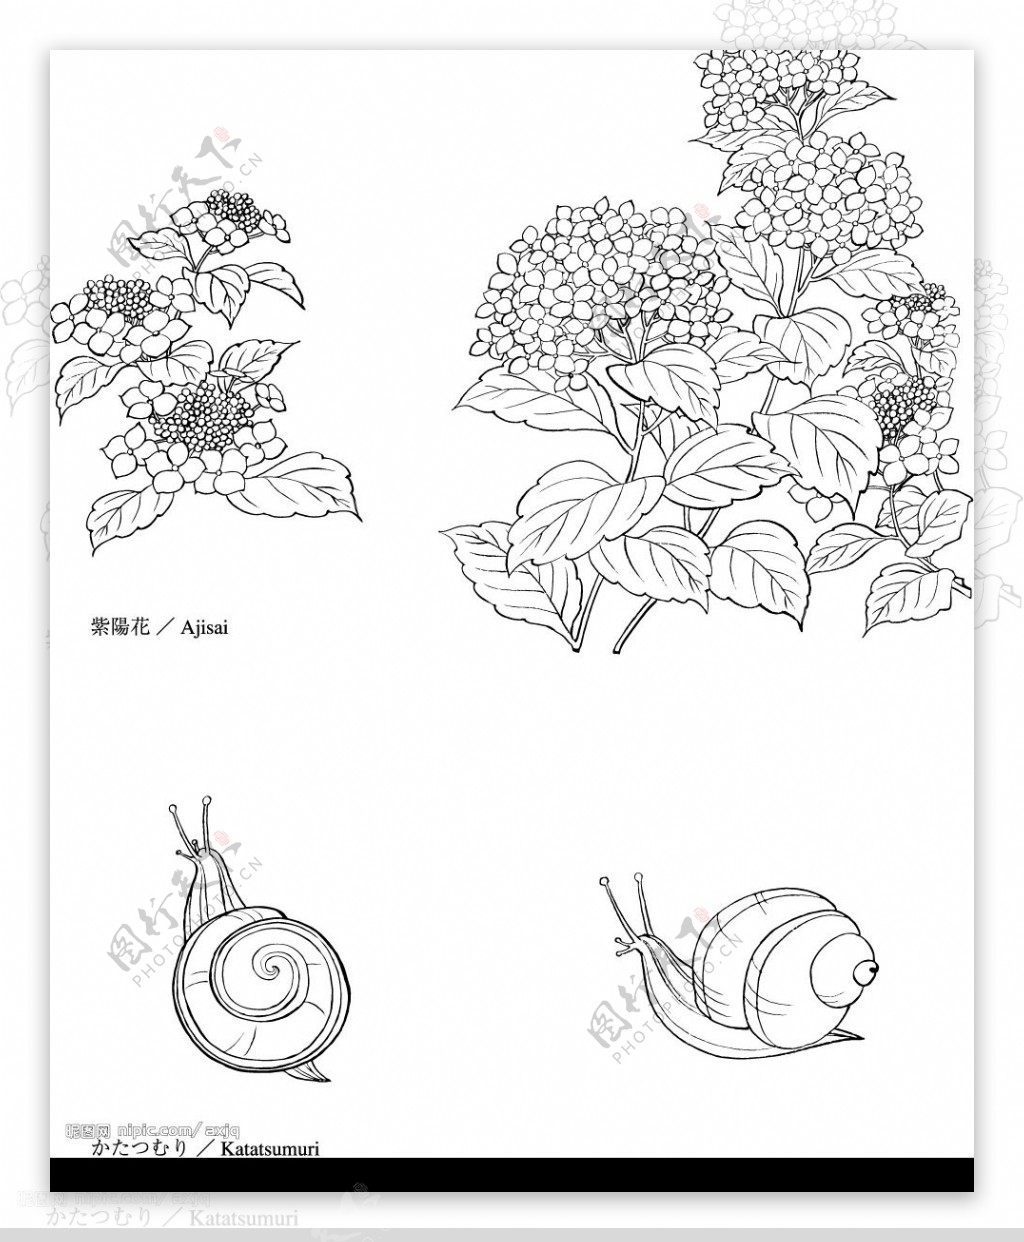 绣球花与蜗牛图片